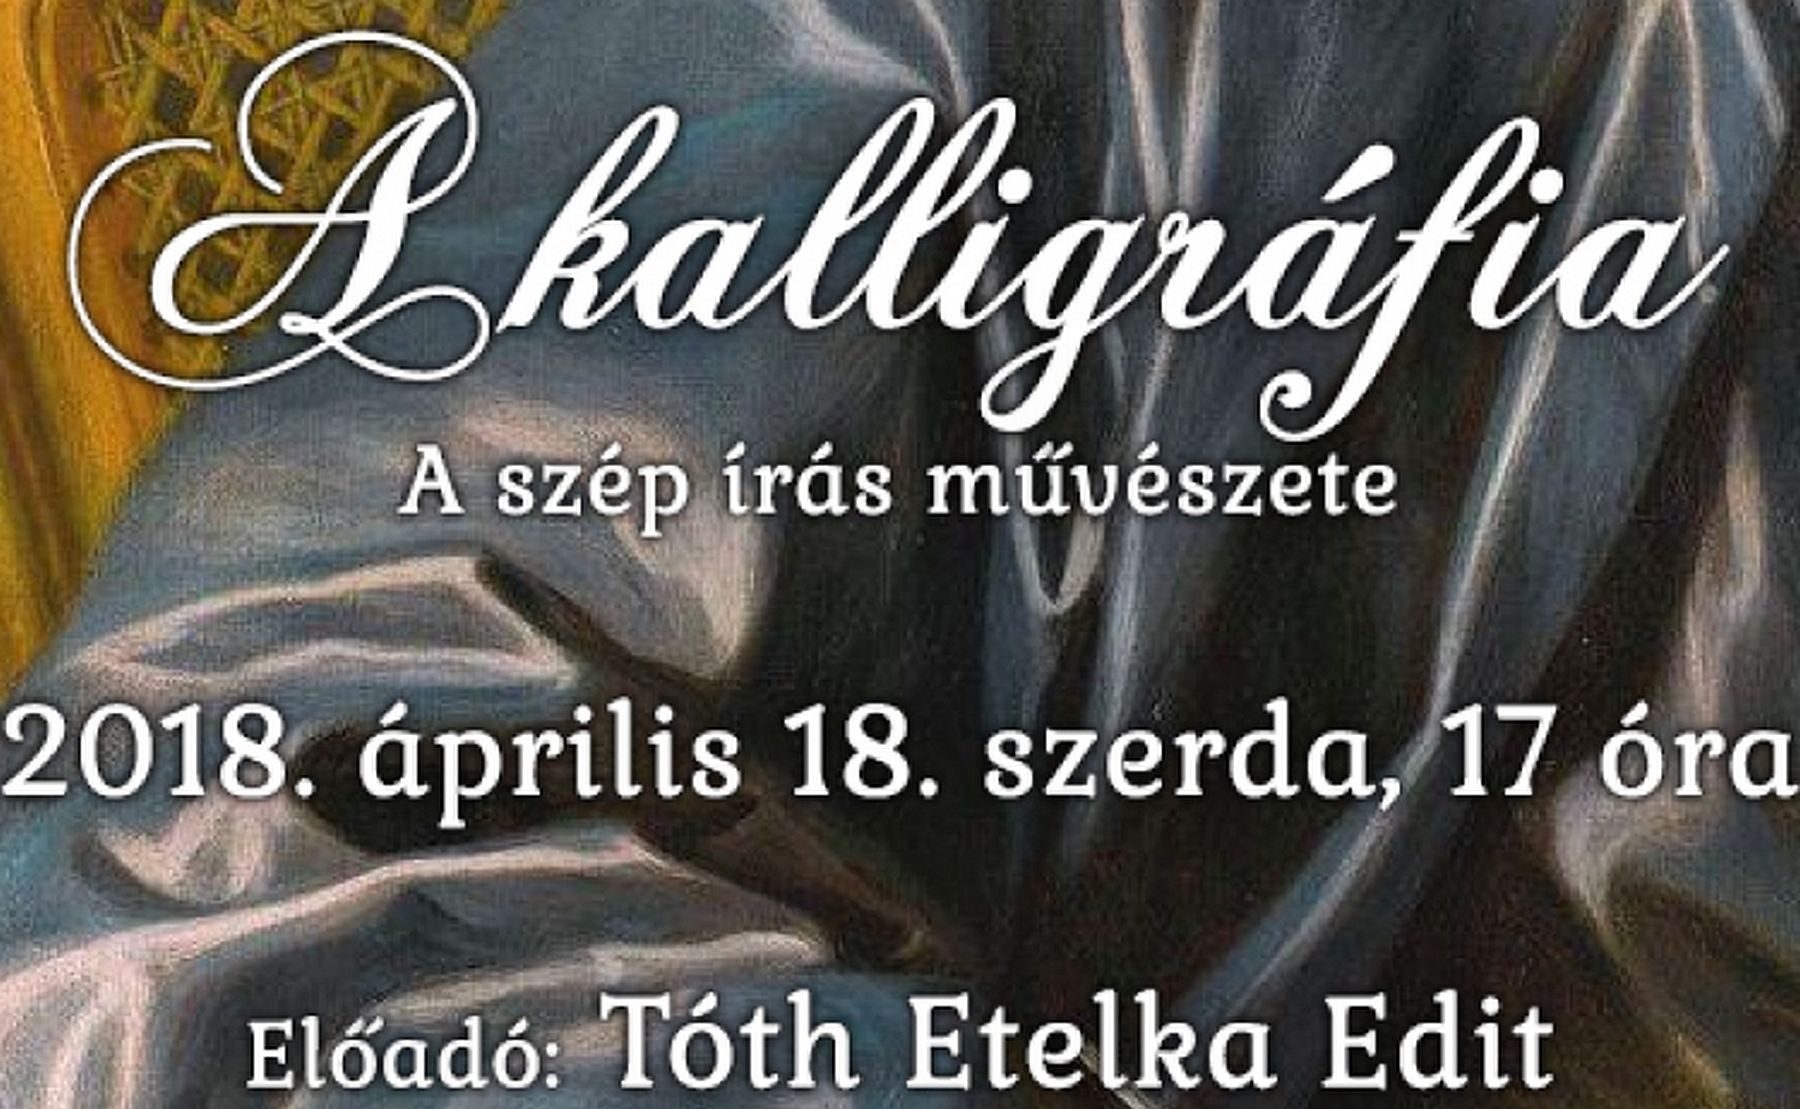 A szép írás művészete - Tóth Etelka Edit, kalligráfus előadása a Fekete Sas Patikamúzeumban